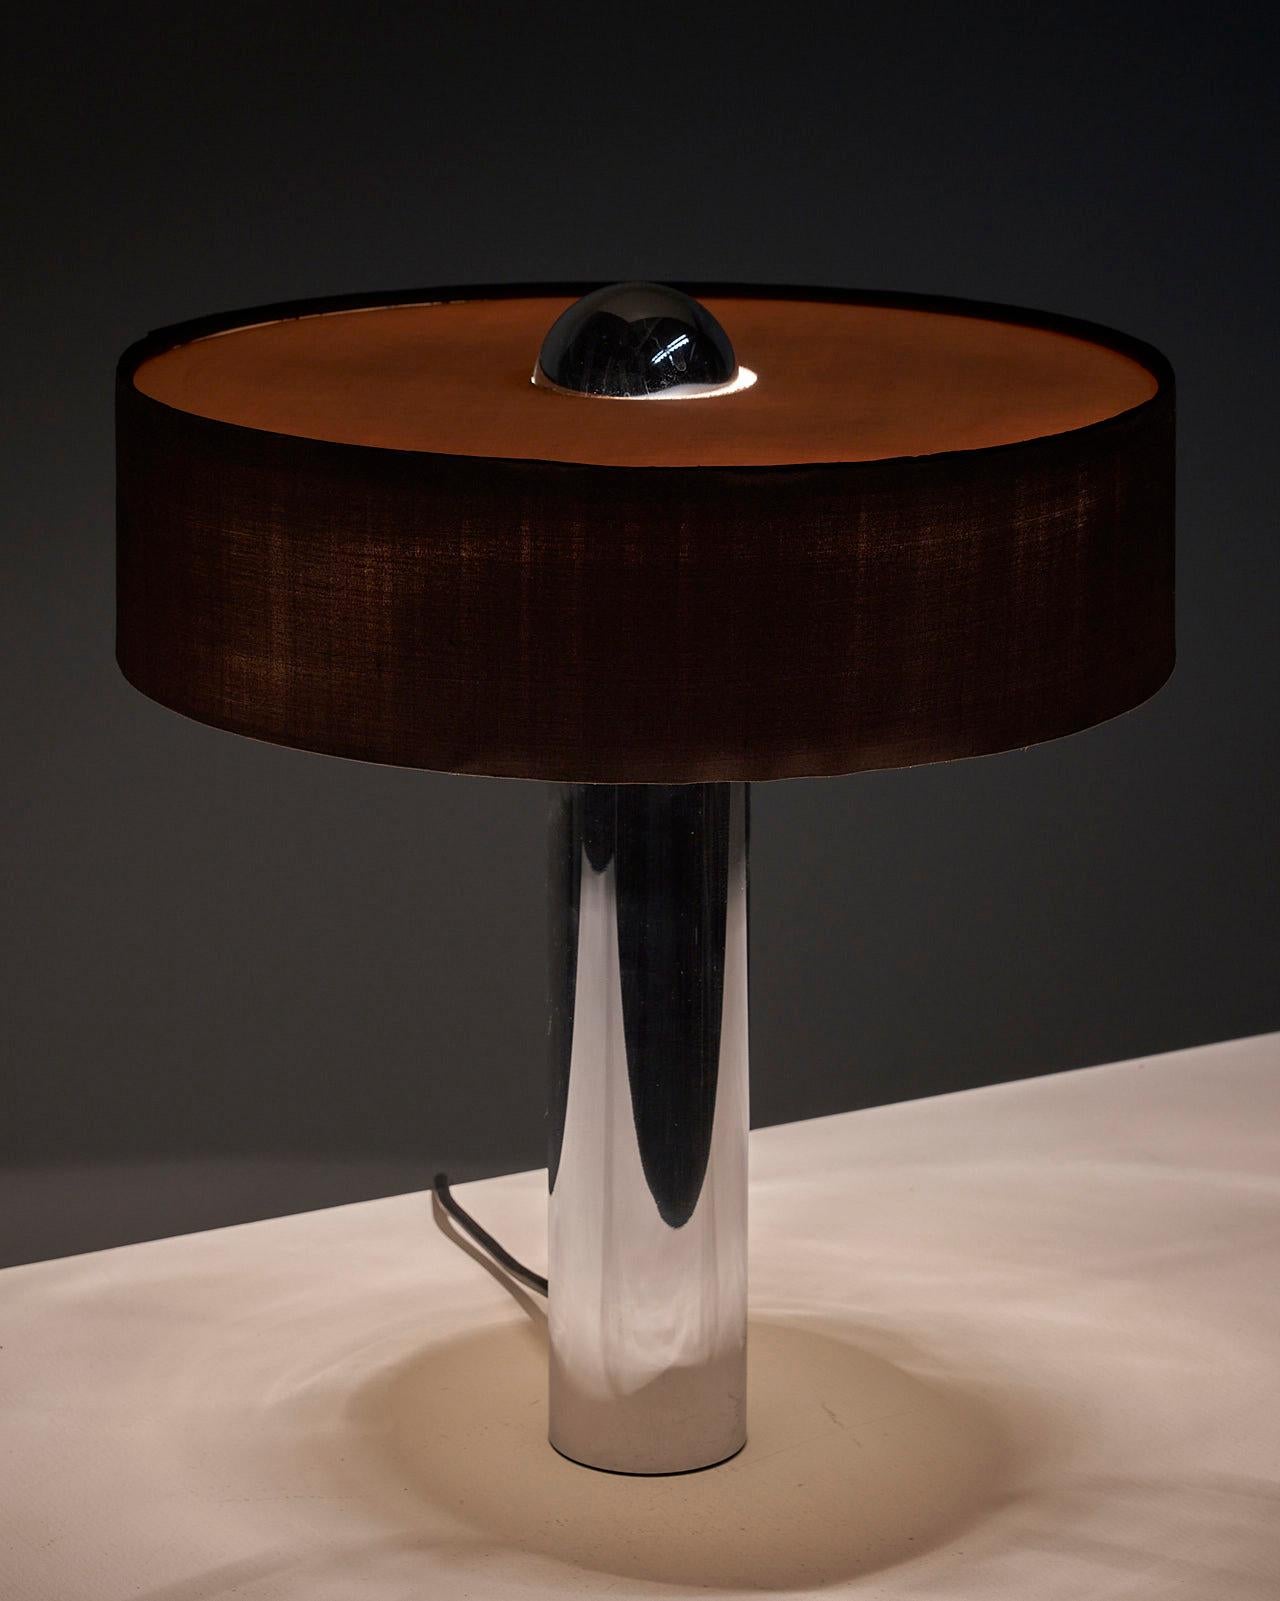 Voici une remarquable lampe de table en chrome massif avec un abat-jour brun de Cosack, Allemagne. Cette lampe étonnante allie l'élégance d'une lourde base chromée à son abat-jour brun et blanc original, ce qui donne un design harmonieux et